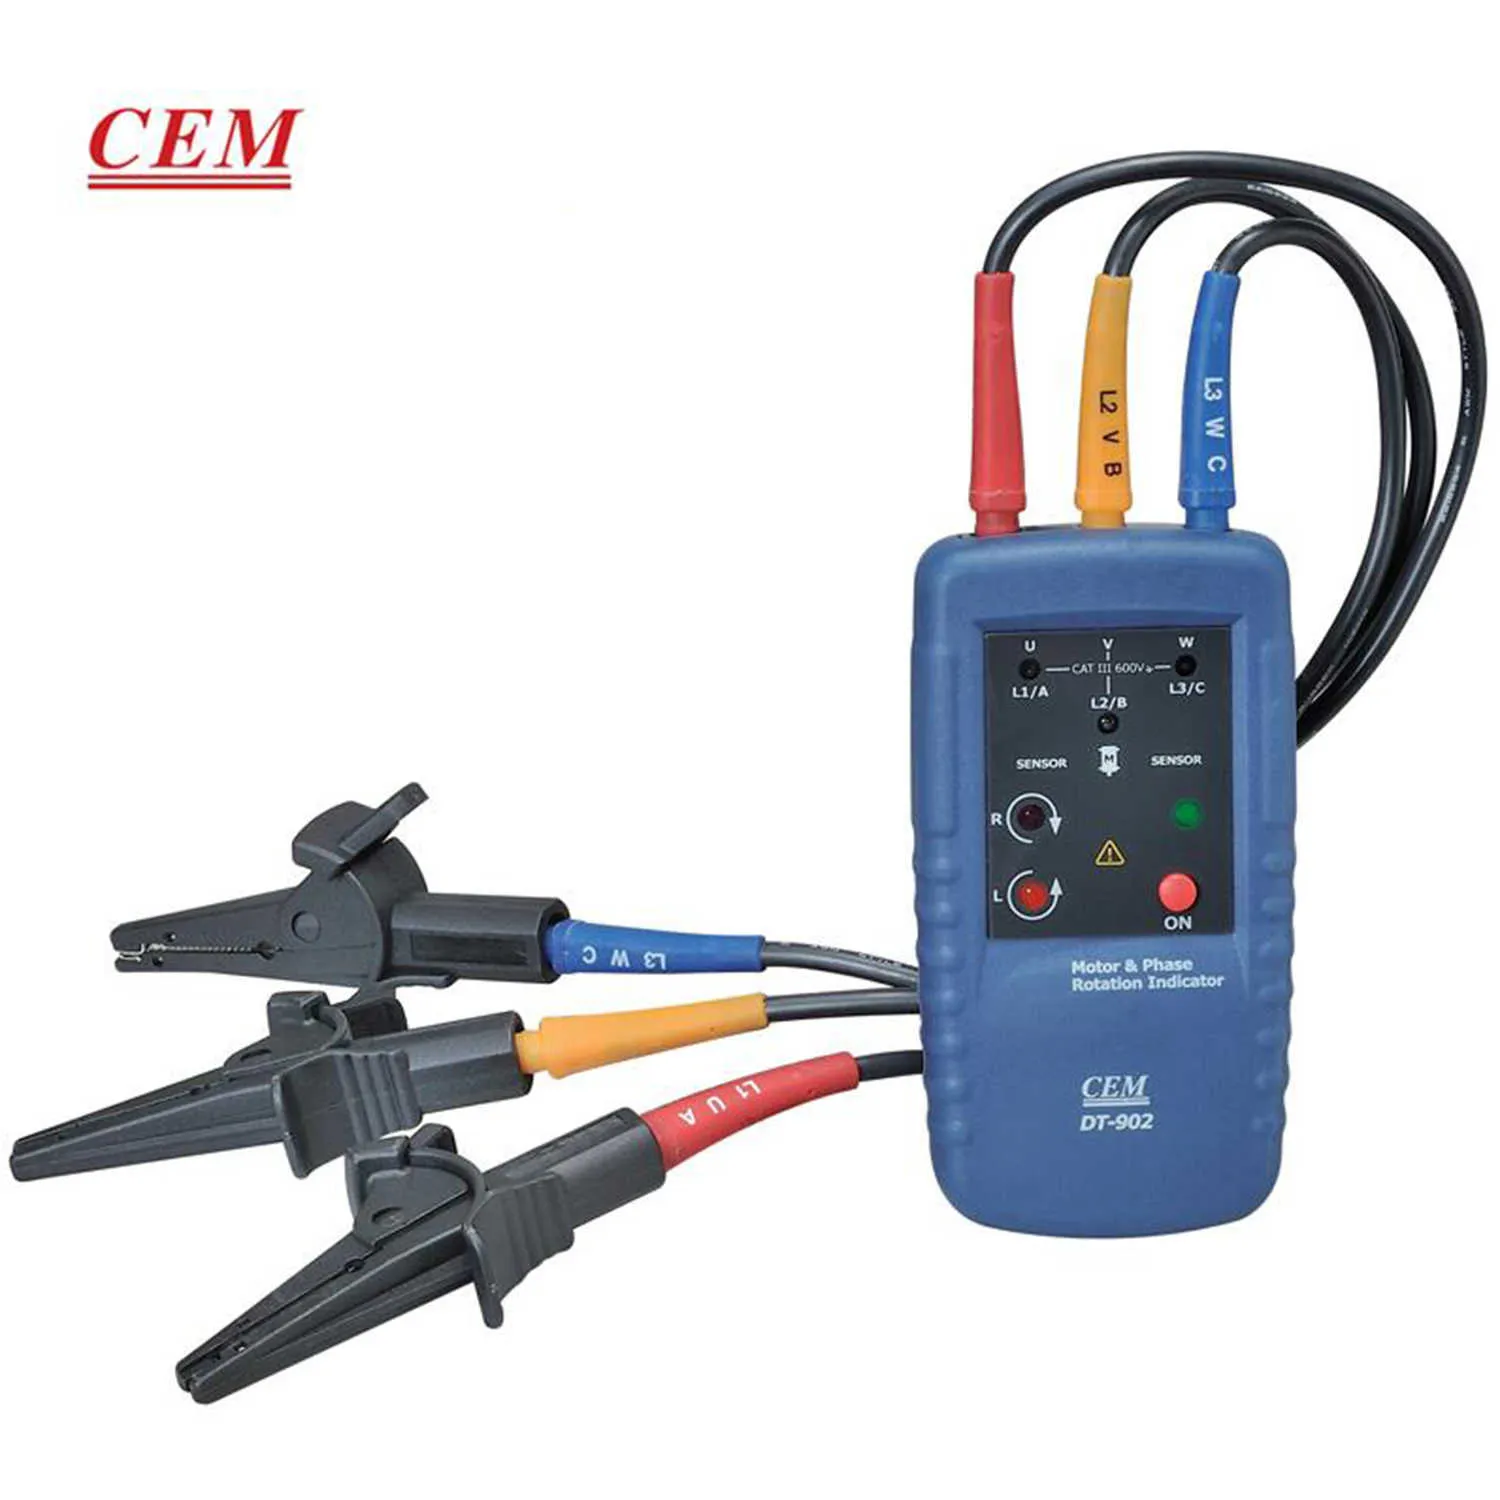 CEM DT-902 Fassekvensmätare Motormagnetfältindikator Digital fasmätare Spänningsfrekvensmätningshand hålls.